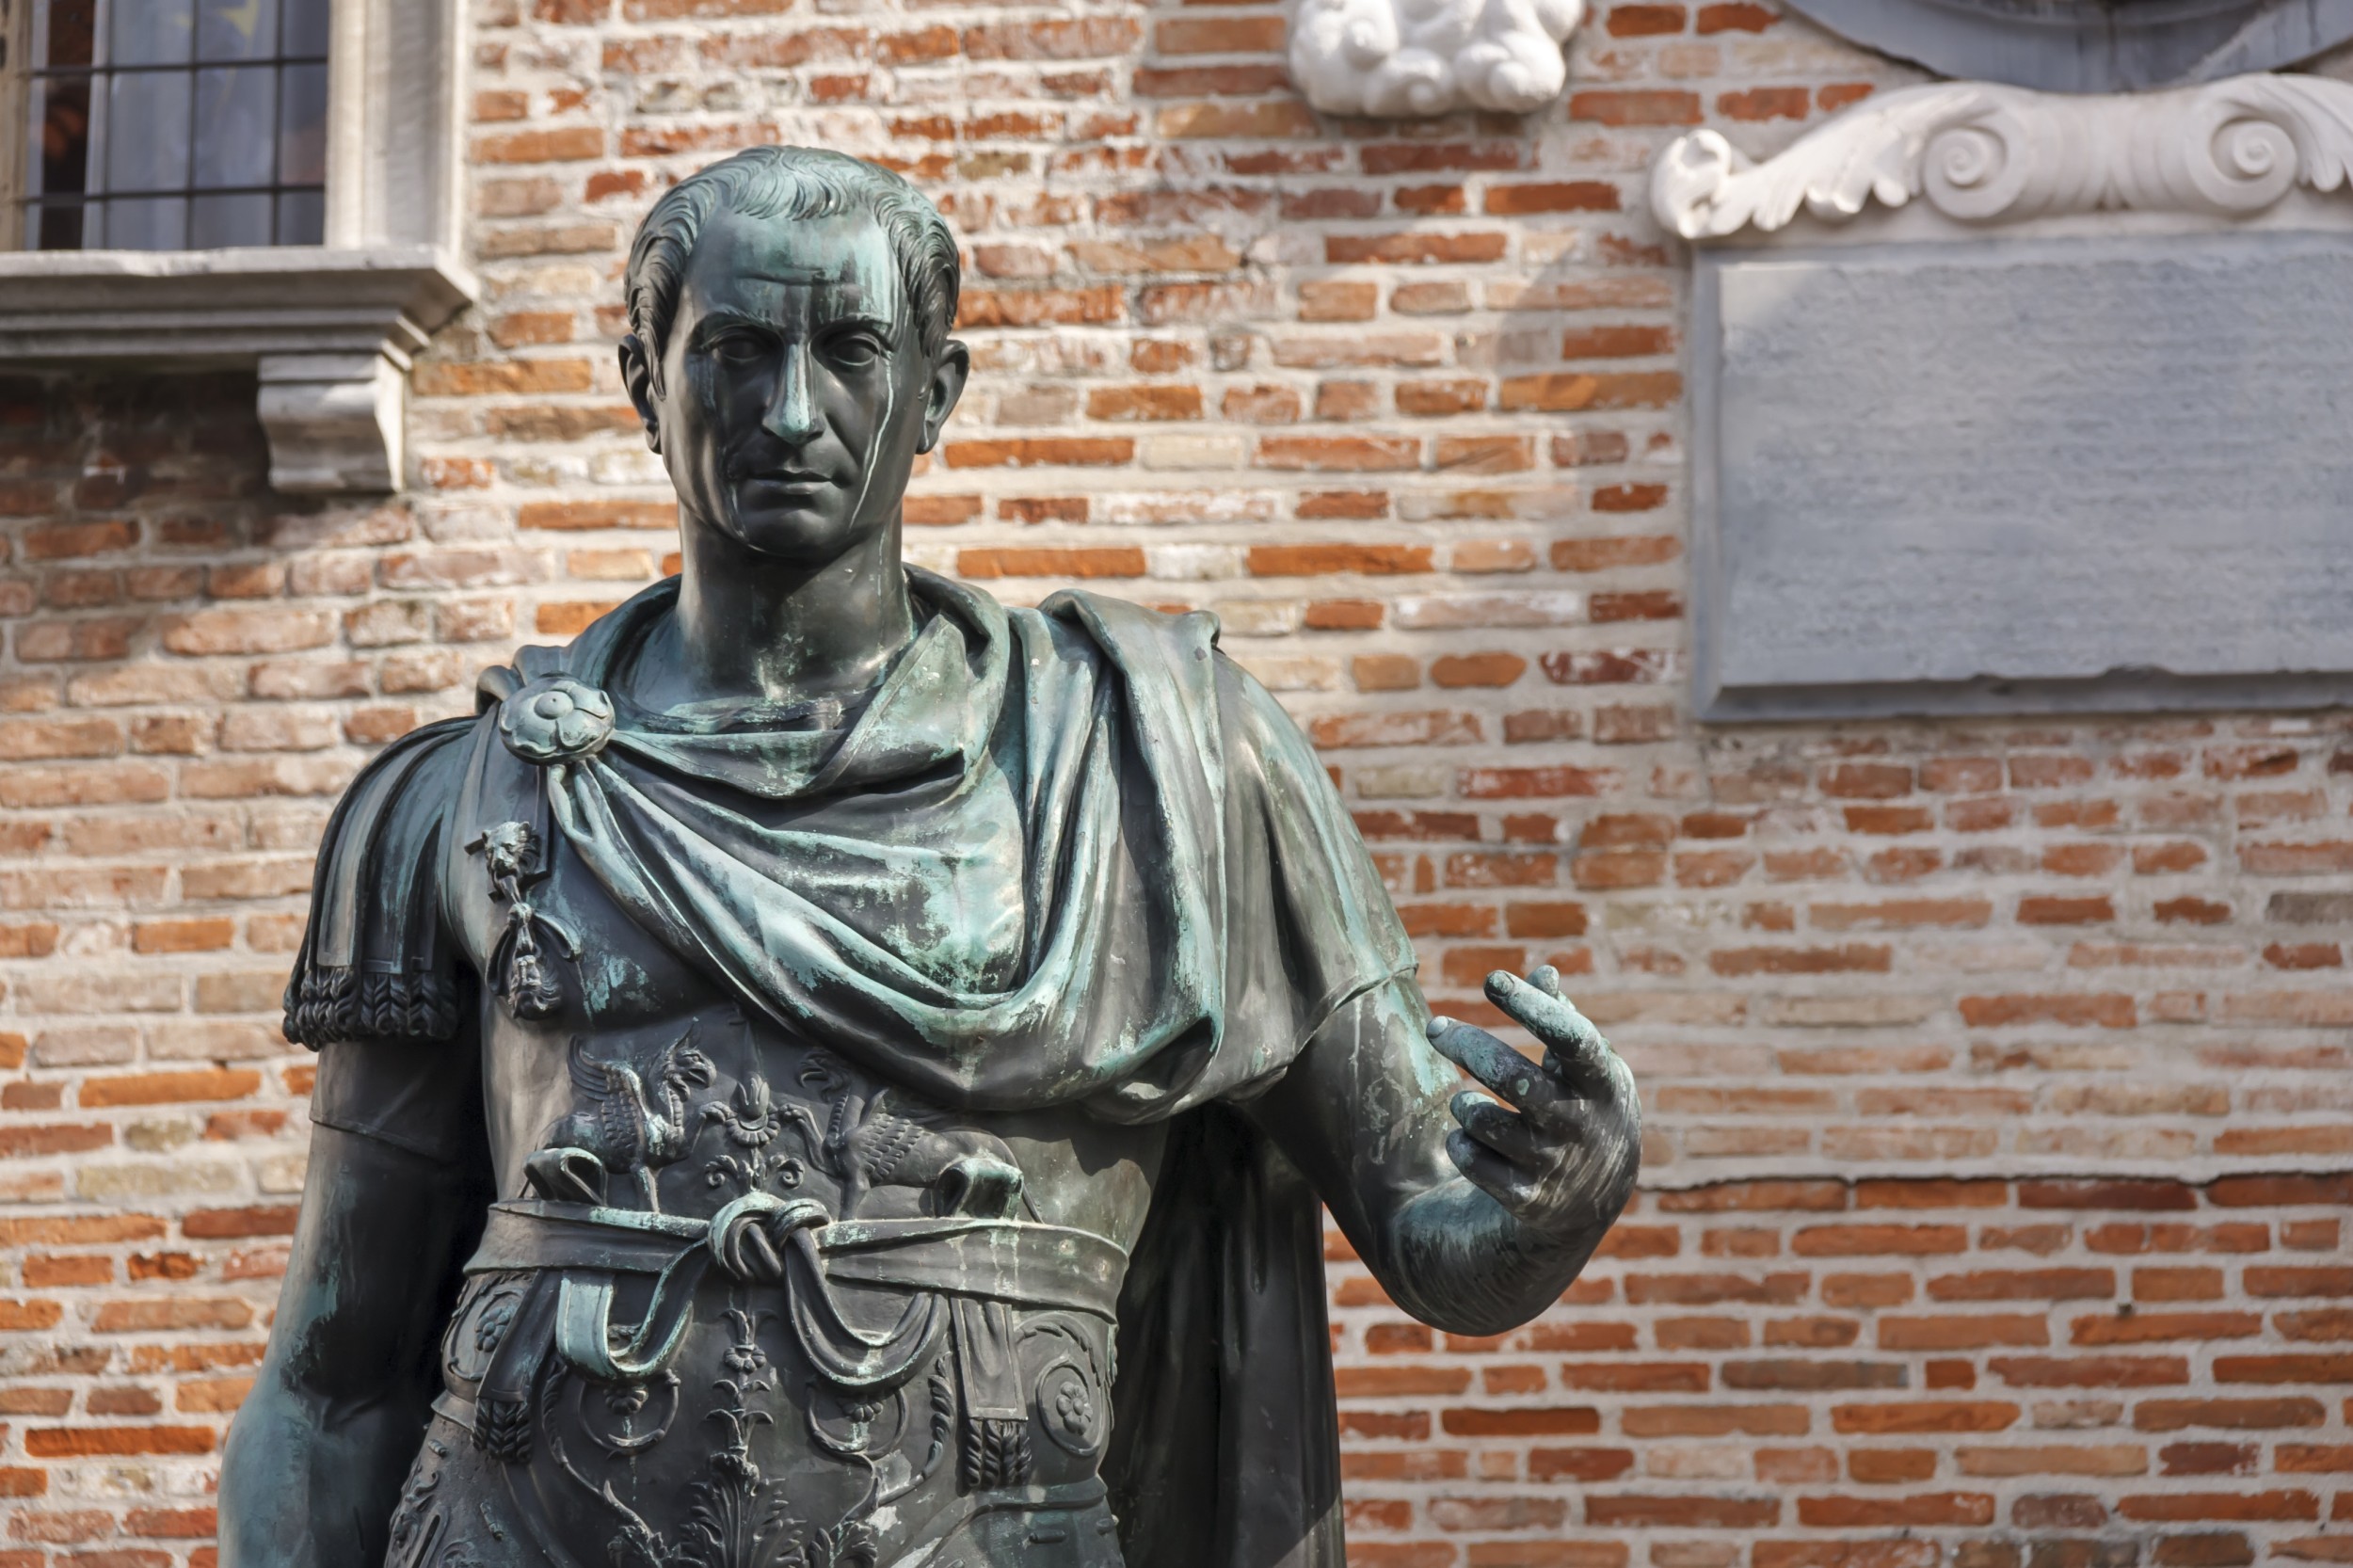 Júlio César: 5 fatos pouco conhecidos sobre um dos maiores líderes romanos  da História